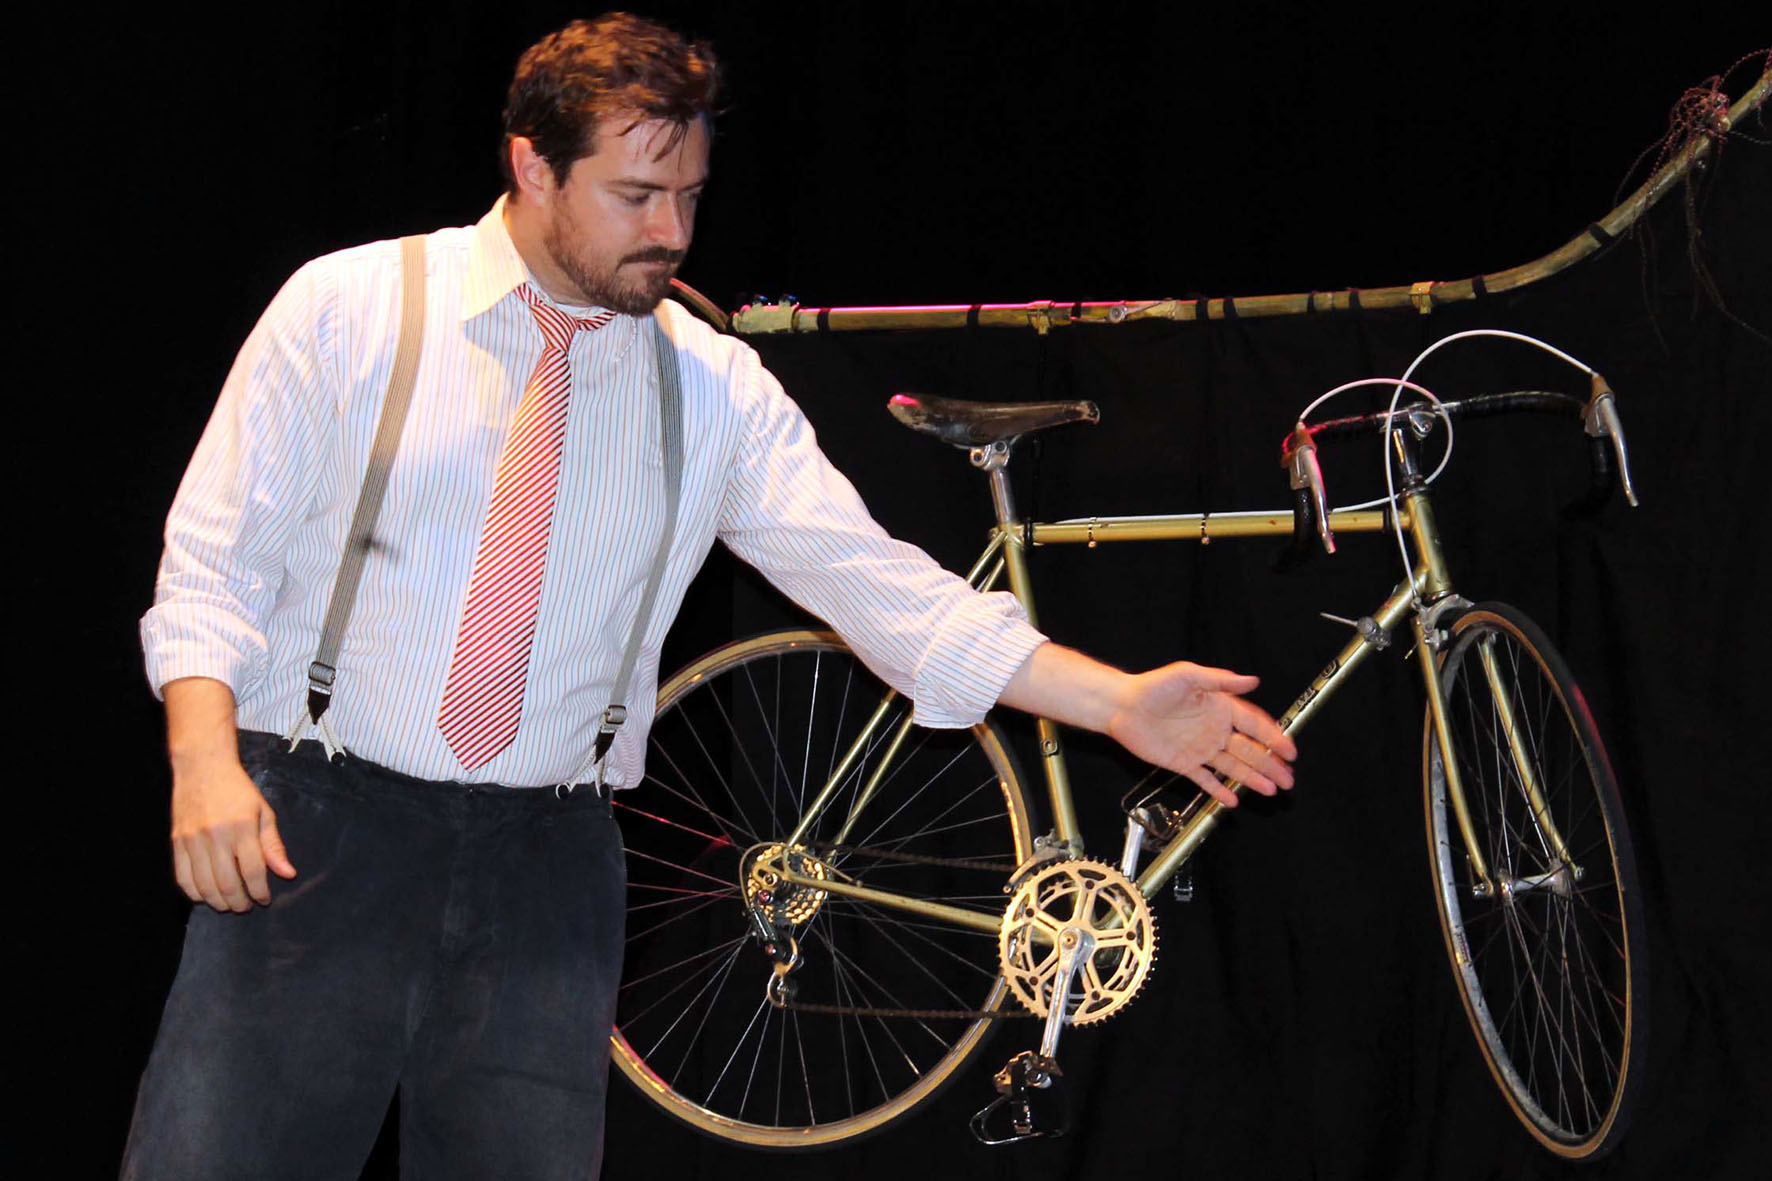 “Bicicletteide”, le storie del ciclismo in scena nei borghi di Ortignano Raggiolo